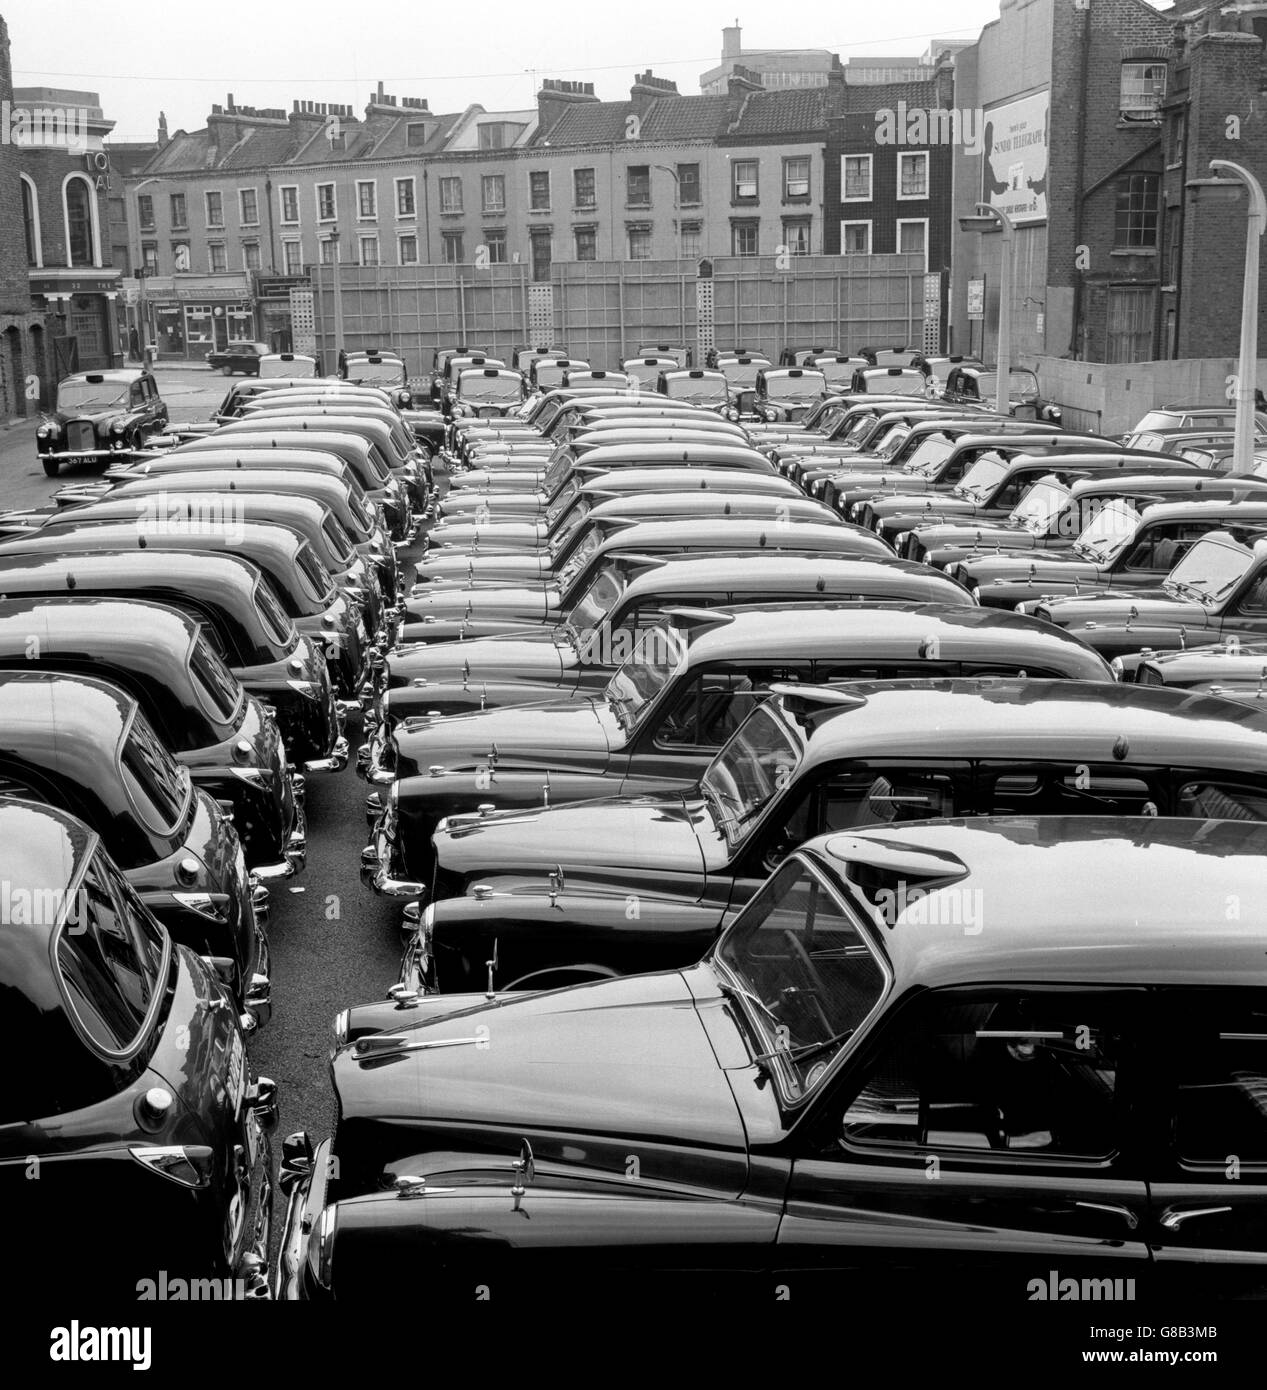 Taxis parkten in den stillen Taxiständen von Yorkway Motors, Caledonian Road, King's Cross, London. Die 11,000 Taxifahrer hatten beschlossen, einen „koordinierten Ruhetag“ zu nehmen, um die Regierung auf ihren Fall gegen Mini-Taxis aufmerksam zu machen. Stockfoto